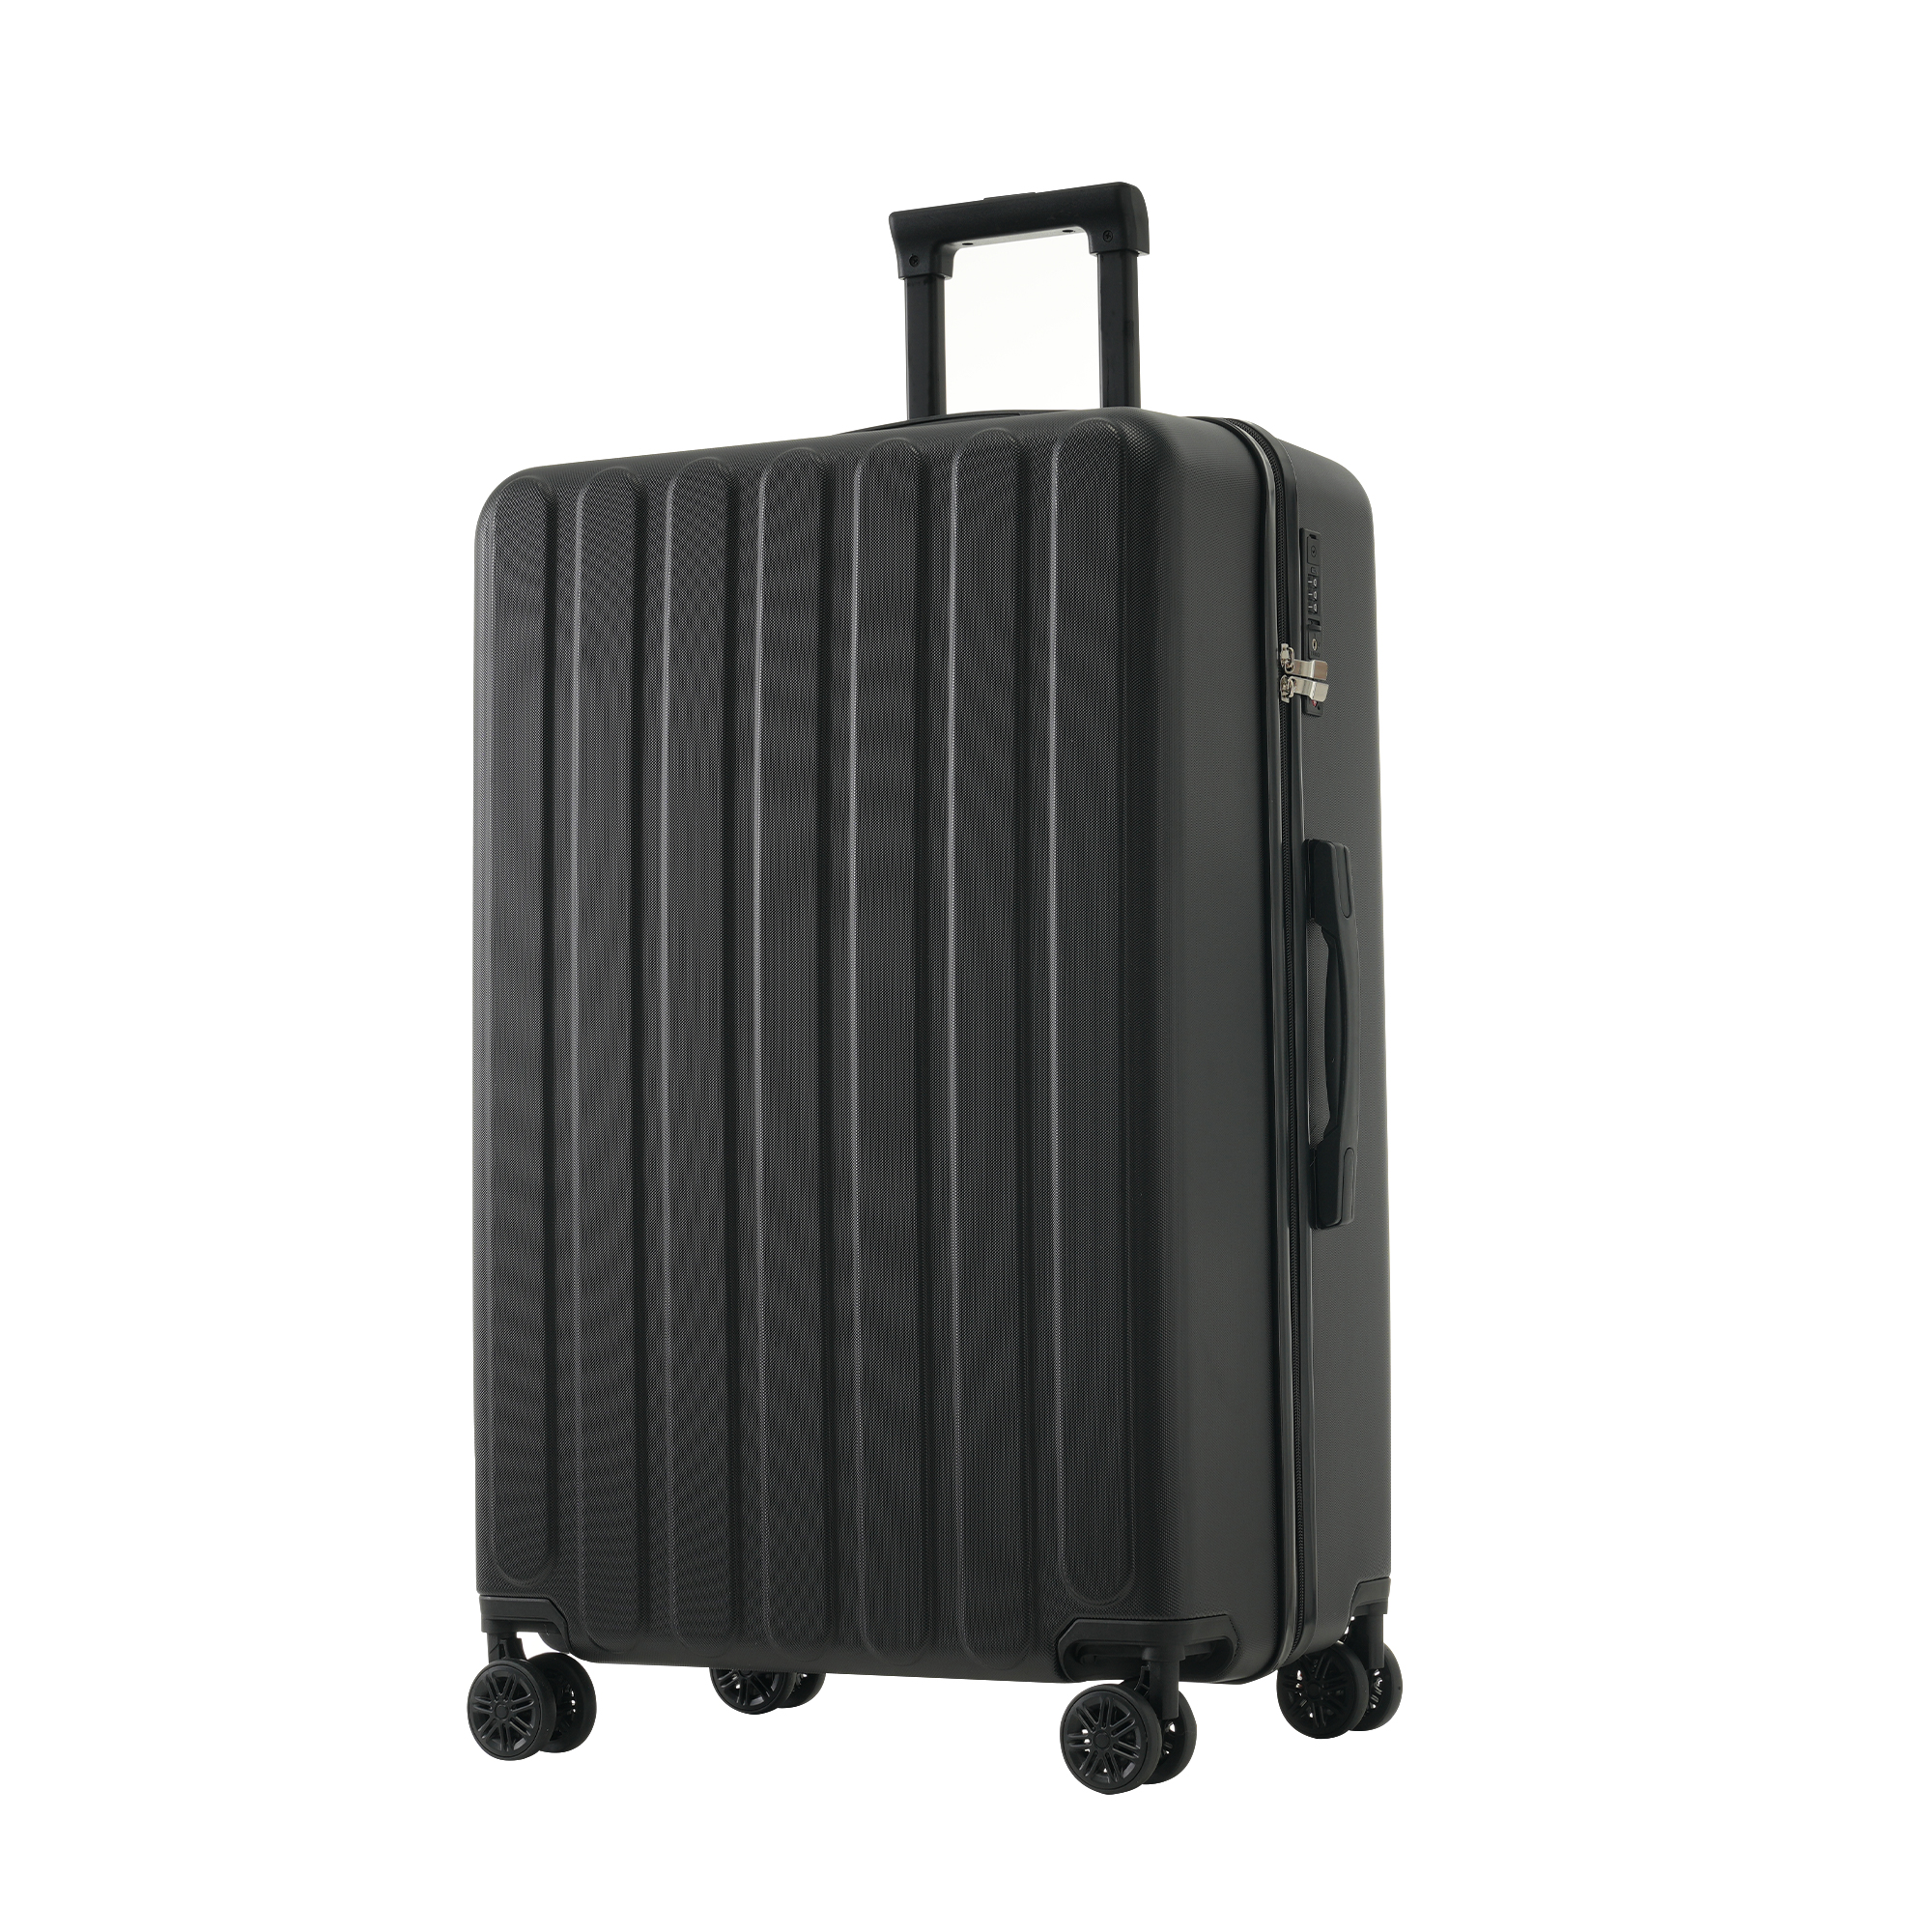 スーツケース Mサイズ 4~7日 大容量 USBポート付き カップホルダー付き ストッパー付き キャ...